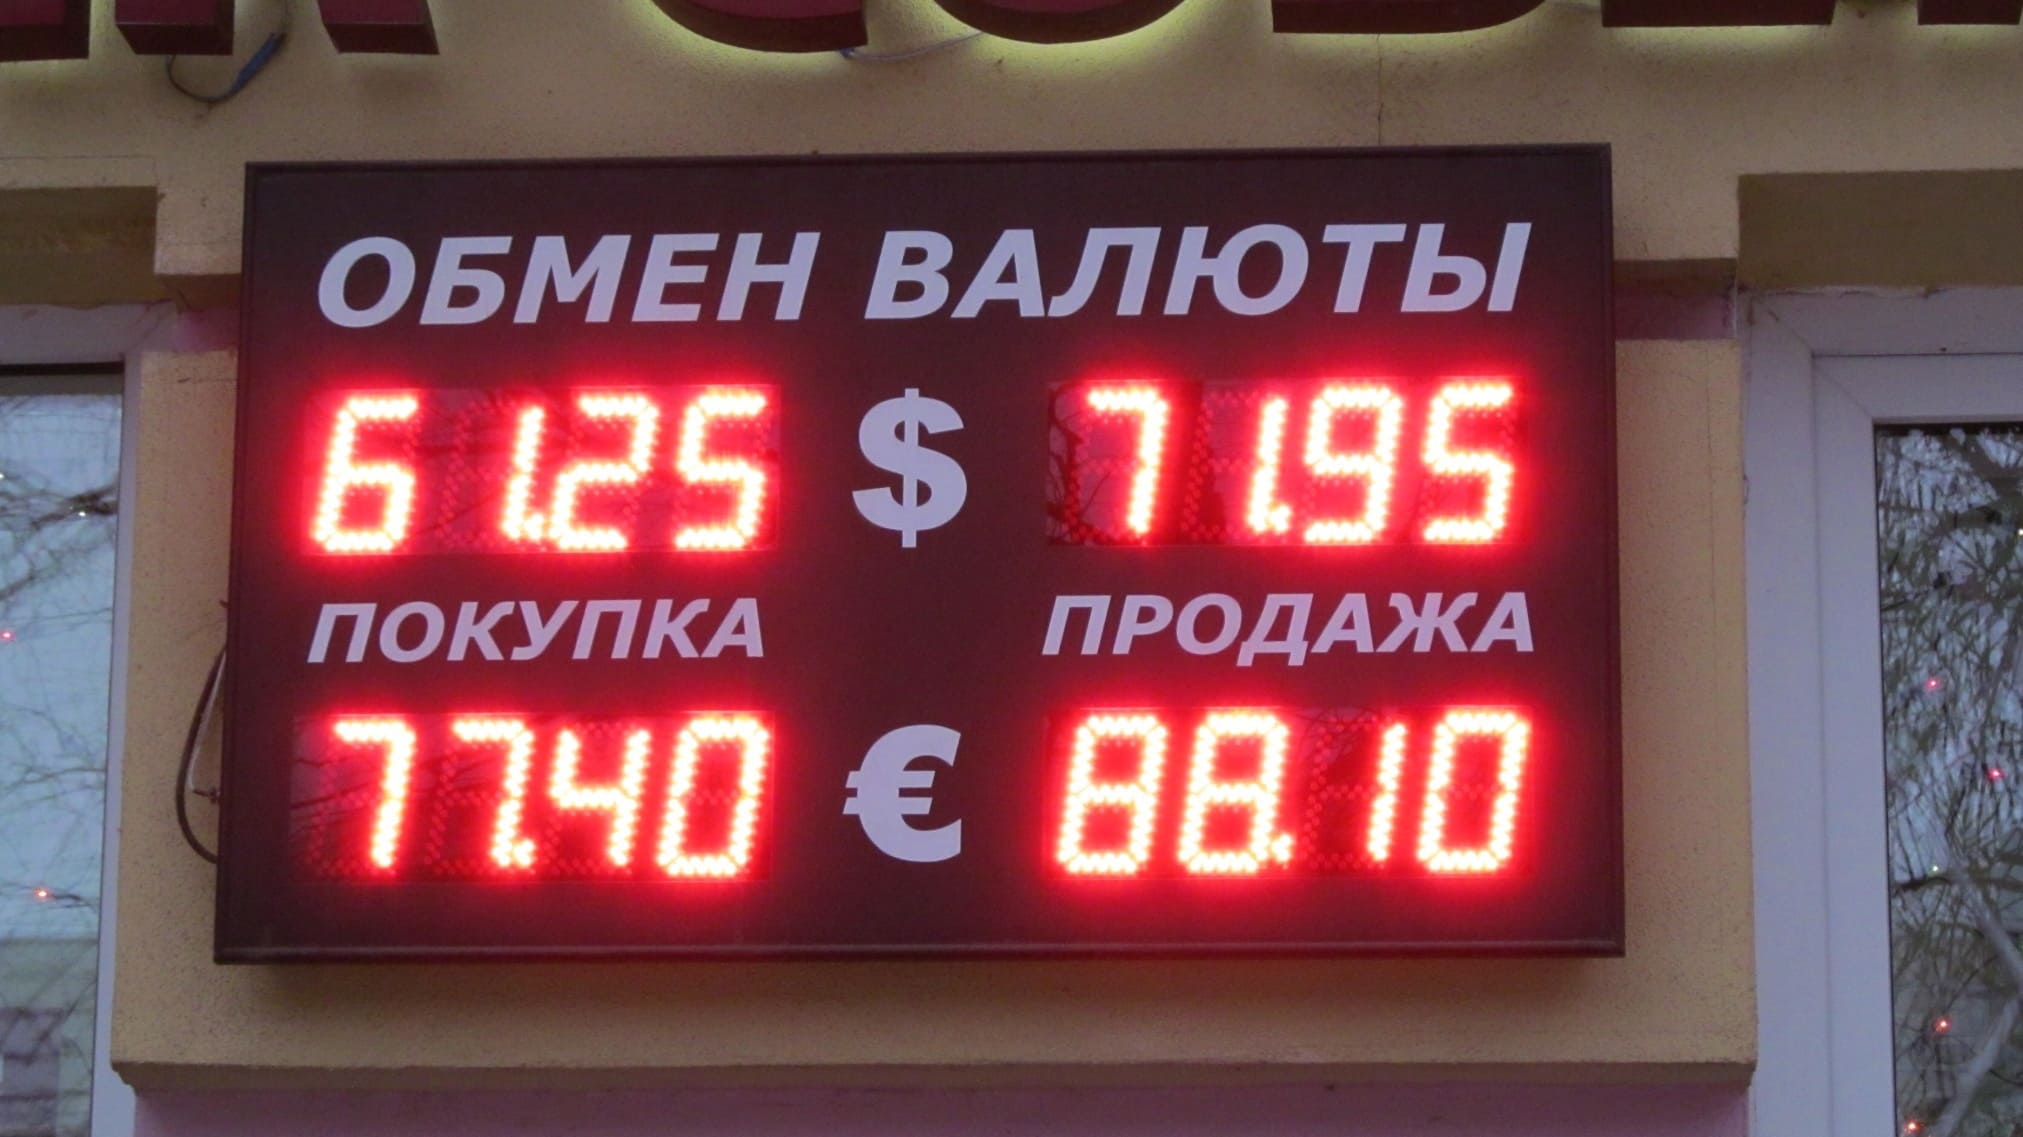 Обмен валюты в москве в обменном пункте биткоин история цены в рублях